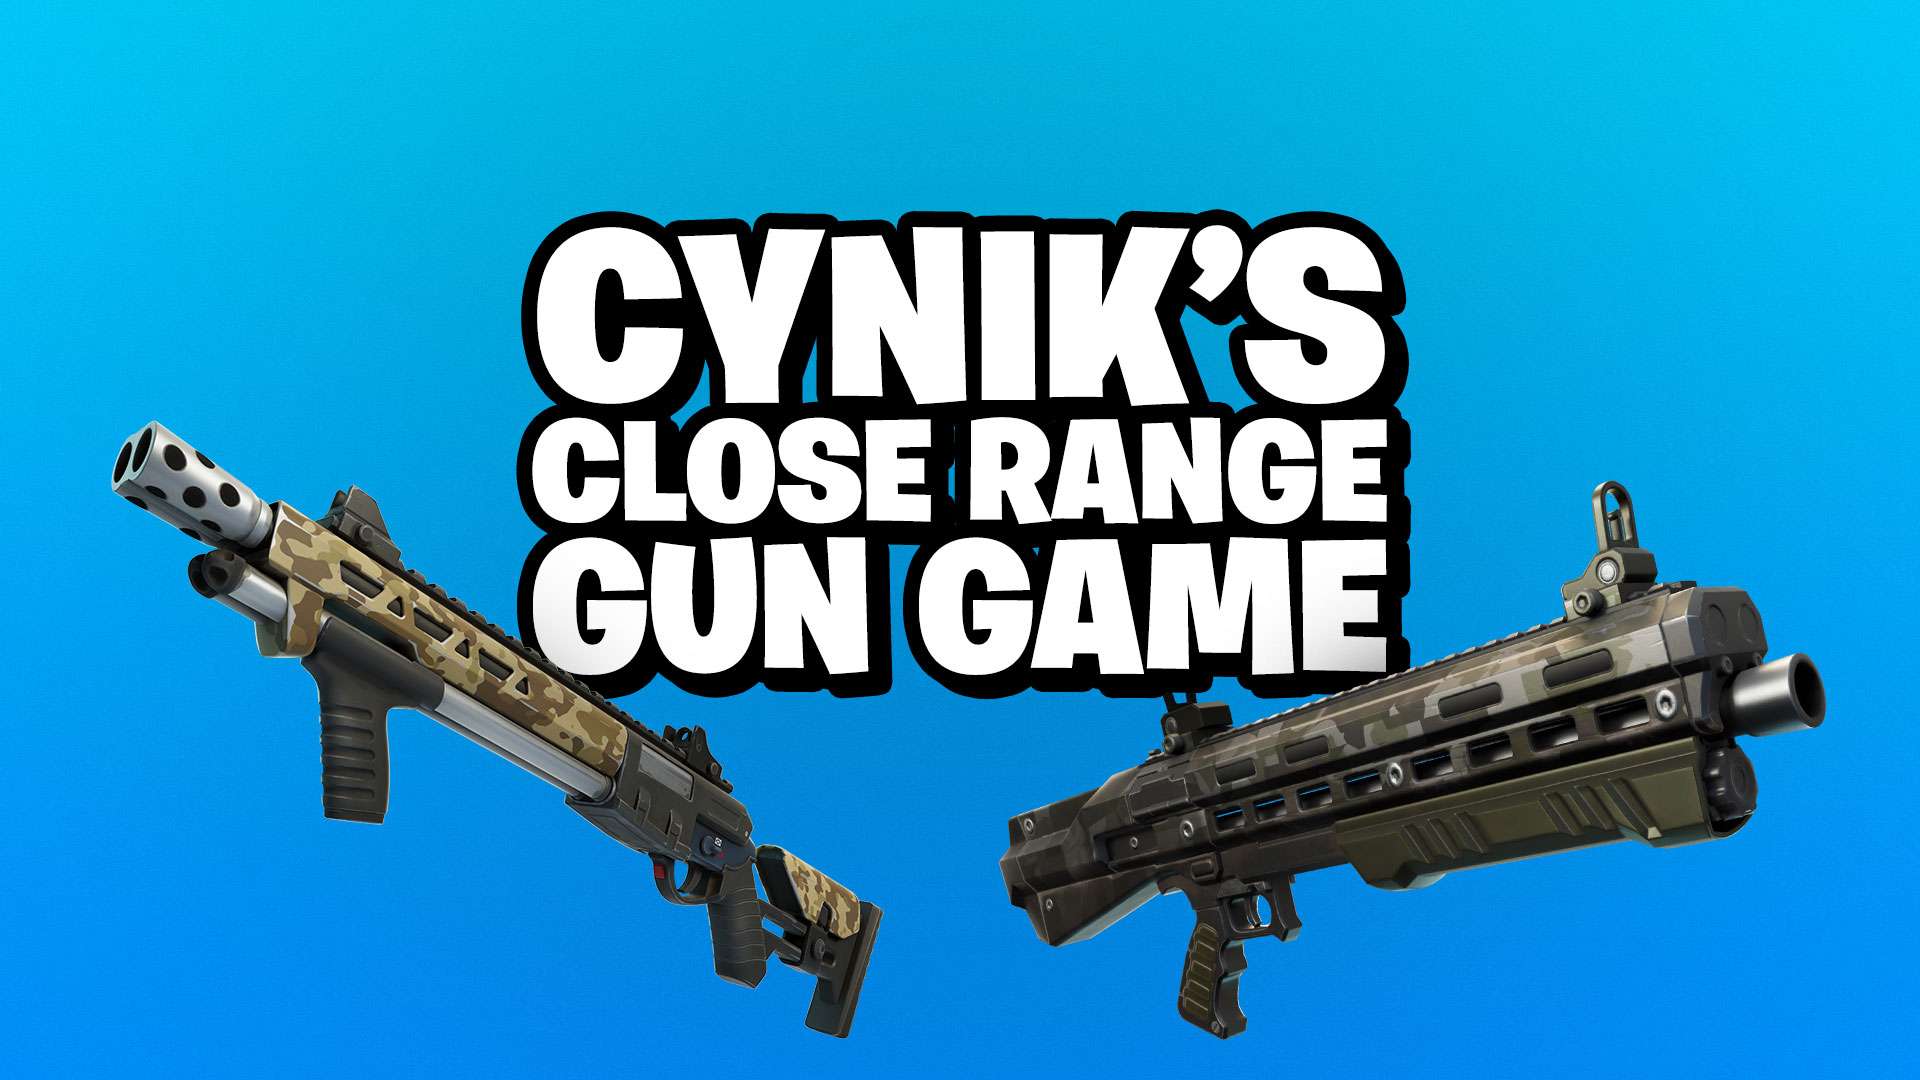 Cynik's Close Range Gun Game